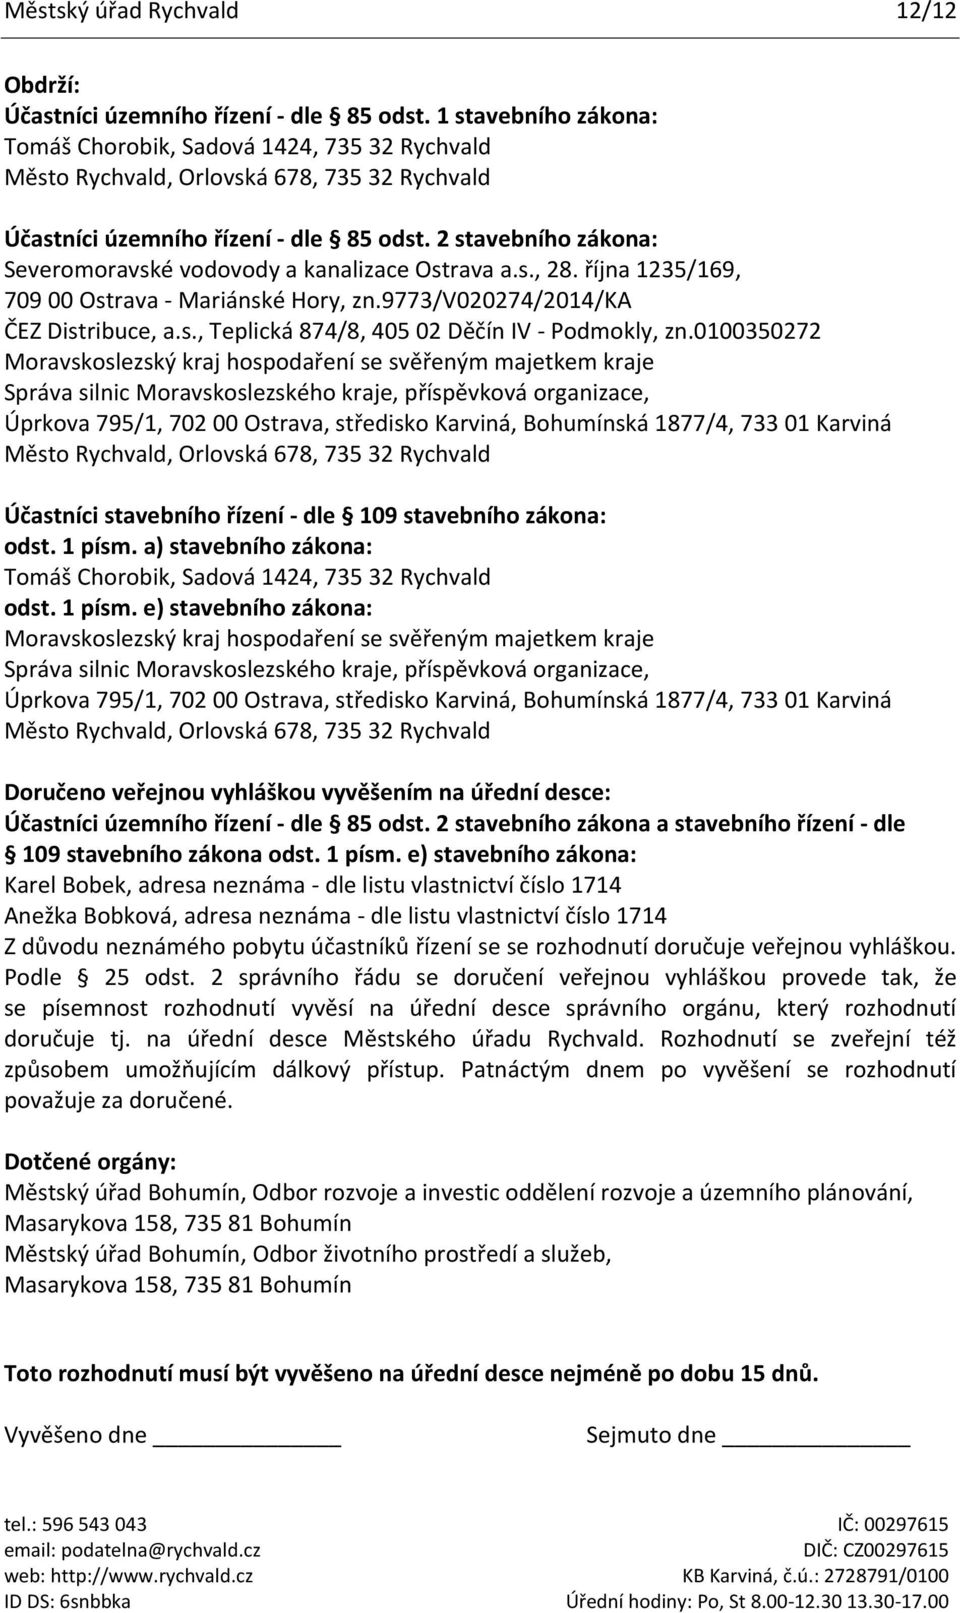 2 stavebního zákona: Severomoravské vodovody a kanalizace Ostrava a.s., 28. října 1235/169, 709 00 Ostrava - Mariánské Hory, zn.9773/v020274/2014/ka ČEZ Distribuce, a.s., Teplická 874/8, 405 02 Děčín IV - Podmokly, zn.